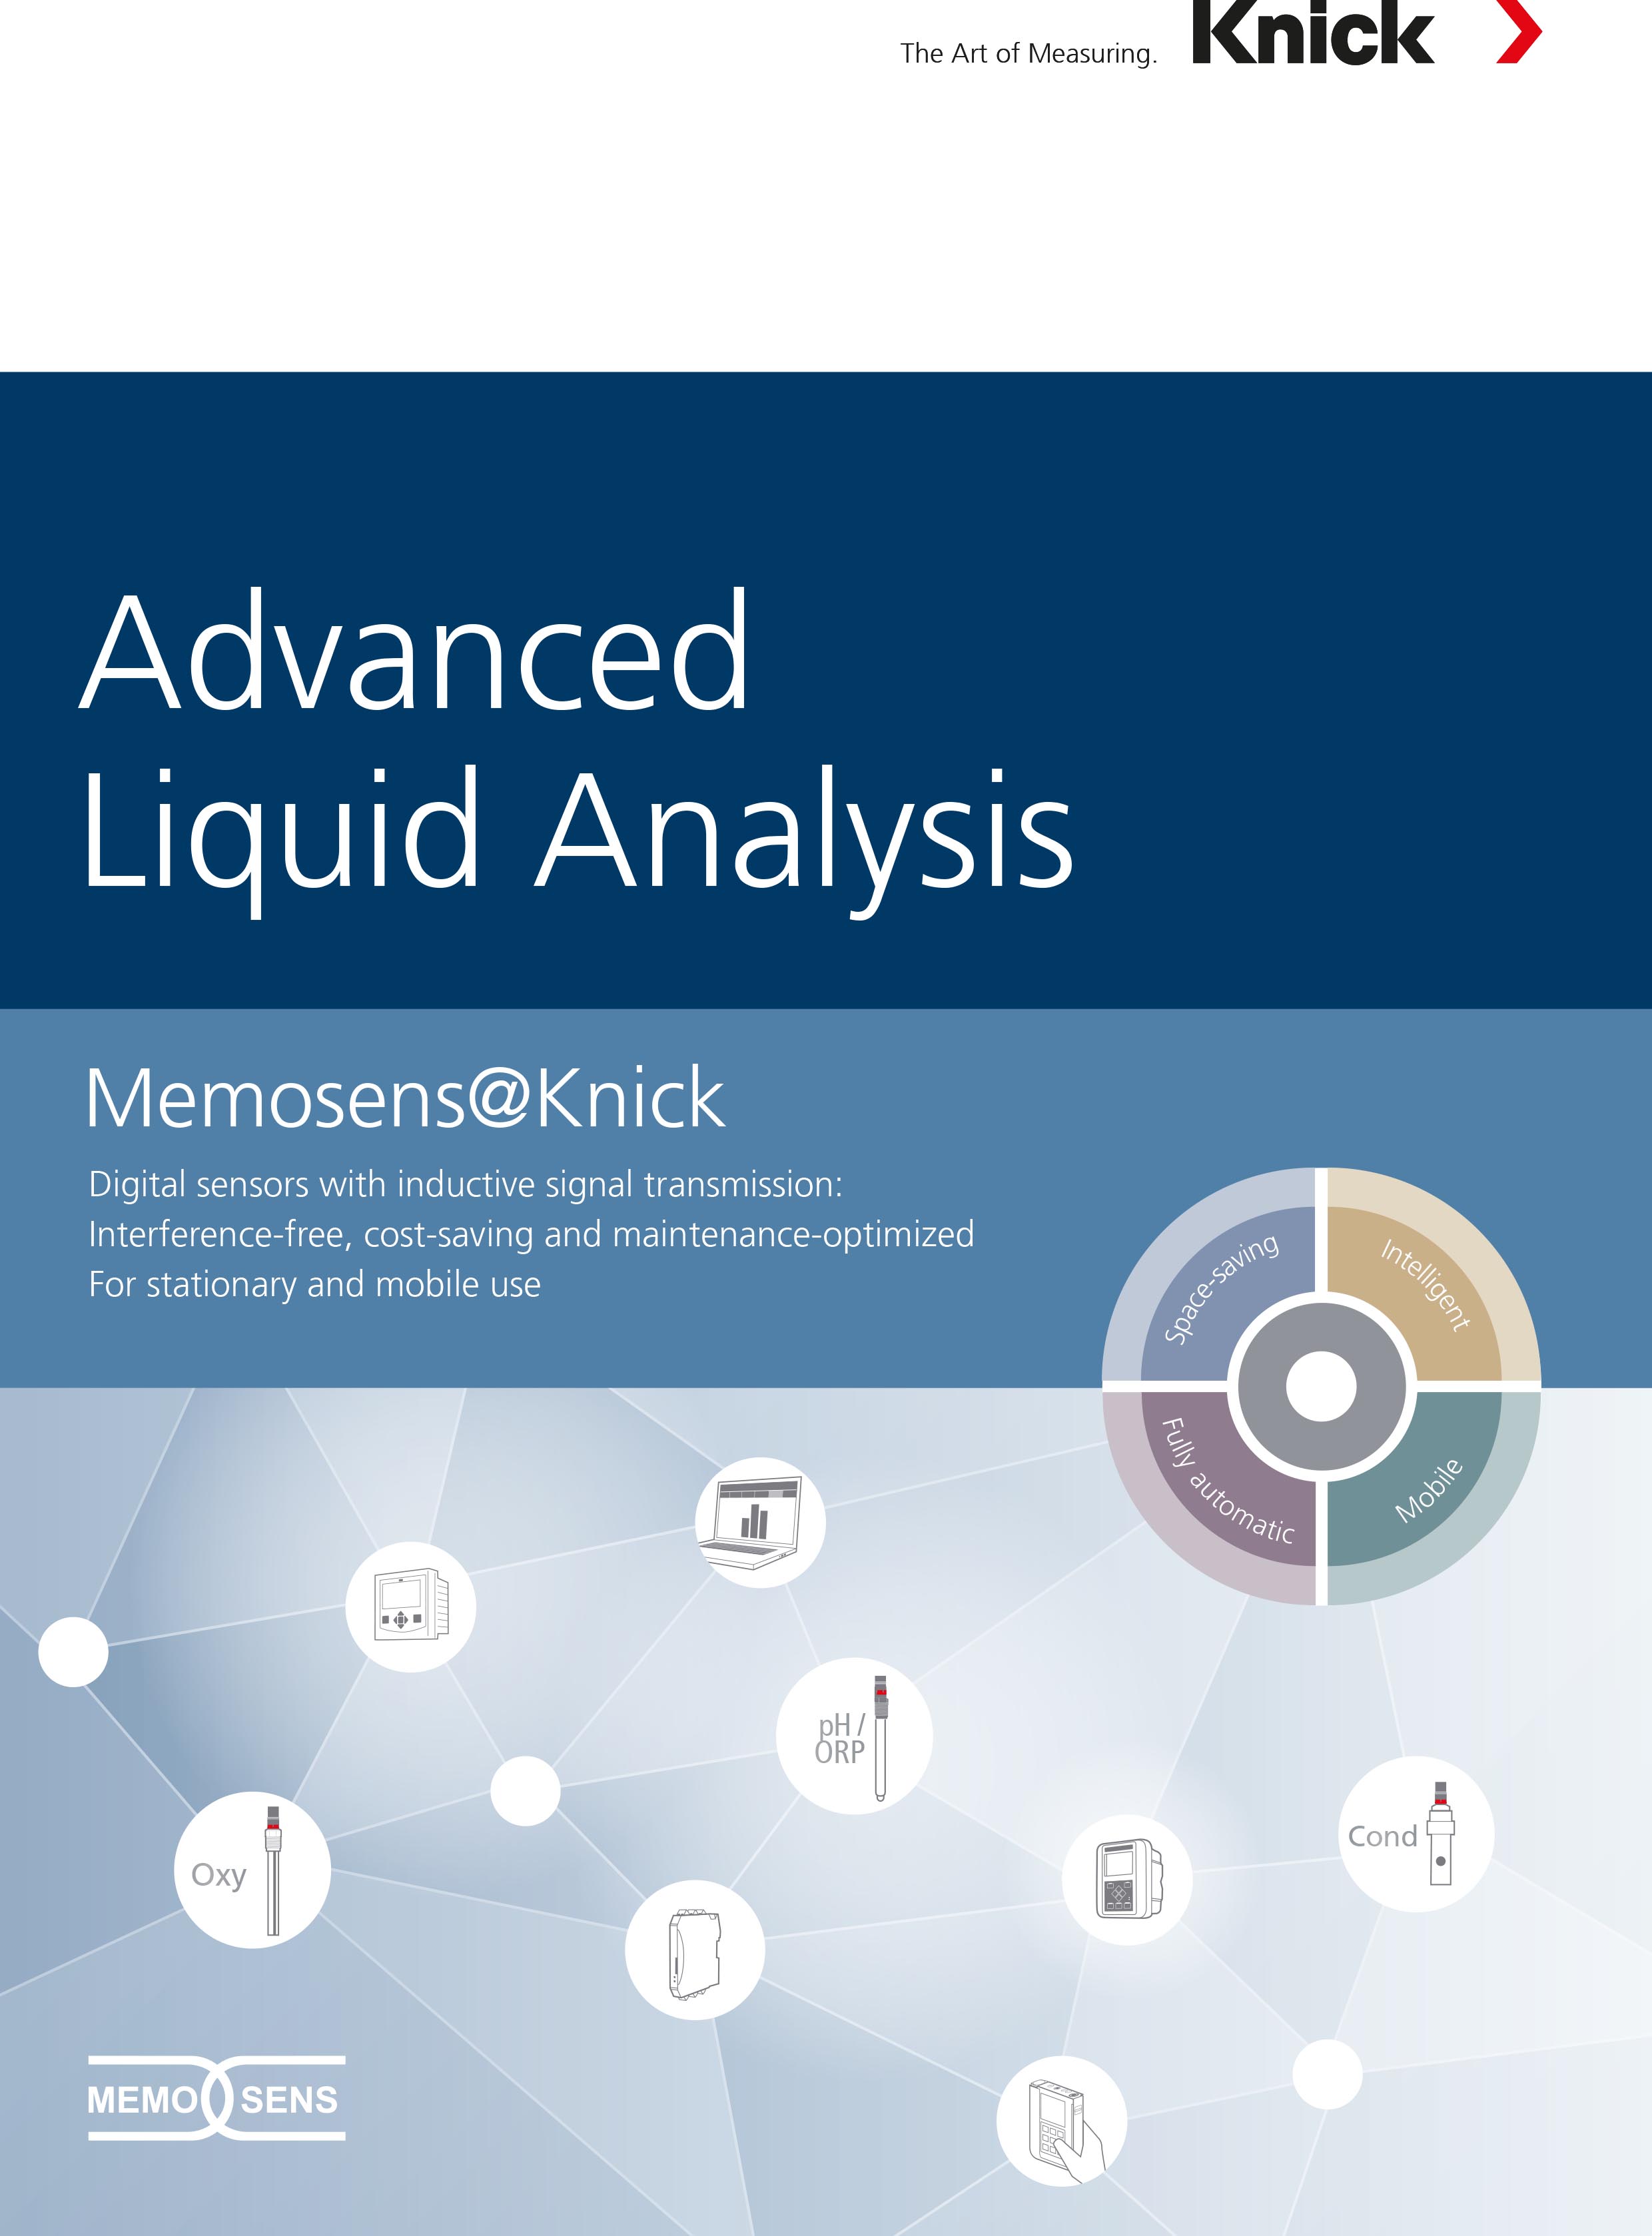 Liquid analysis